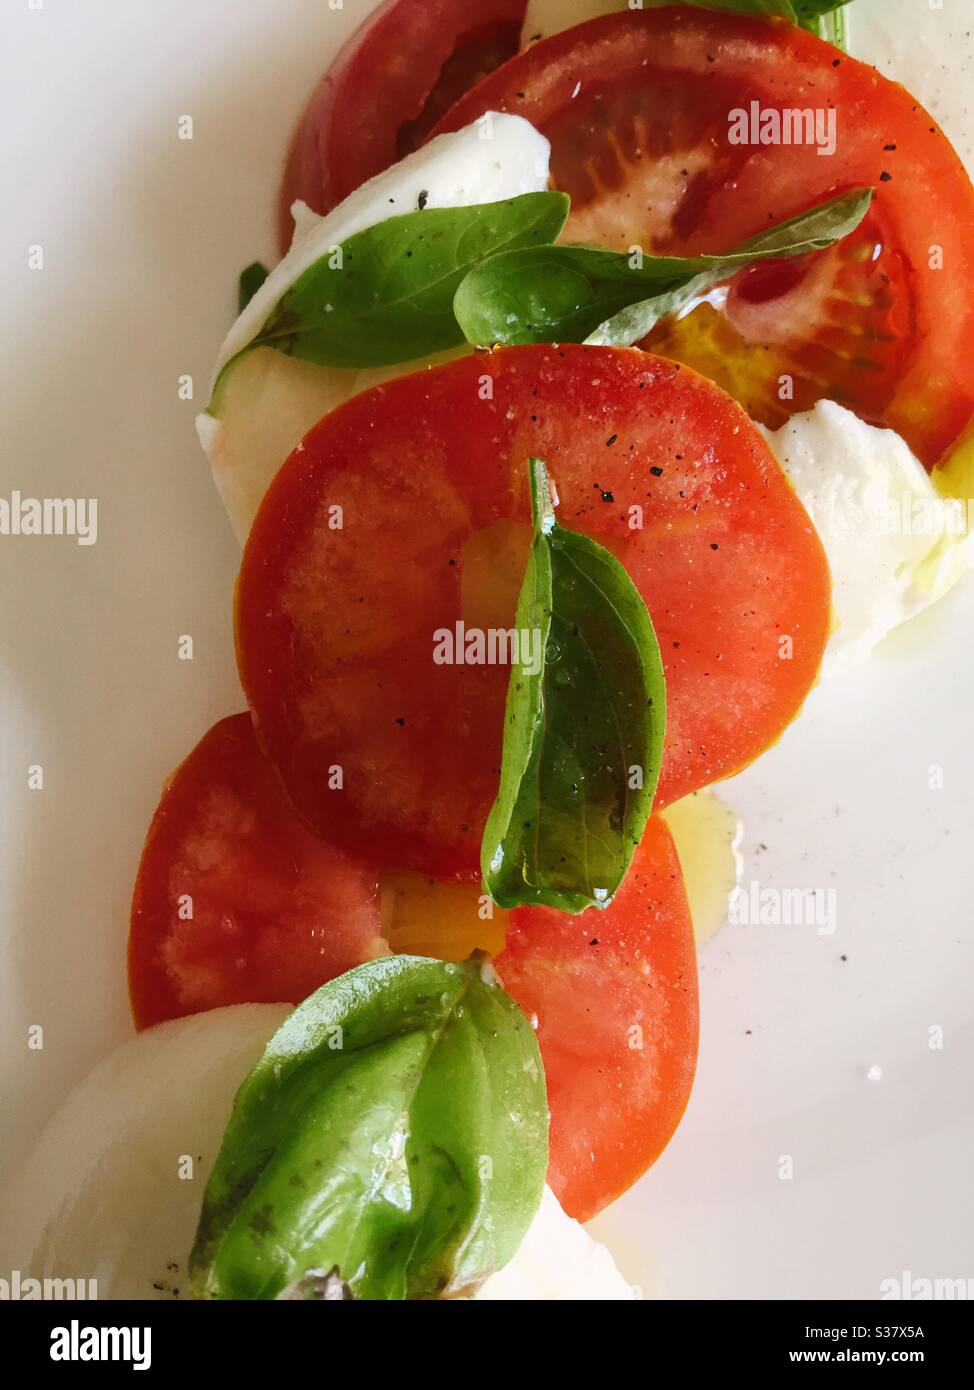 Flache Lage von Reben gereiften Tomaten, Mozzarella-Käse Scheiben und frischem Basilikum Stockfoto